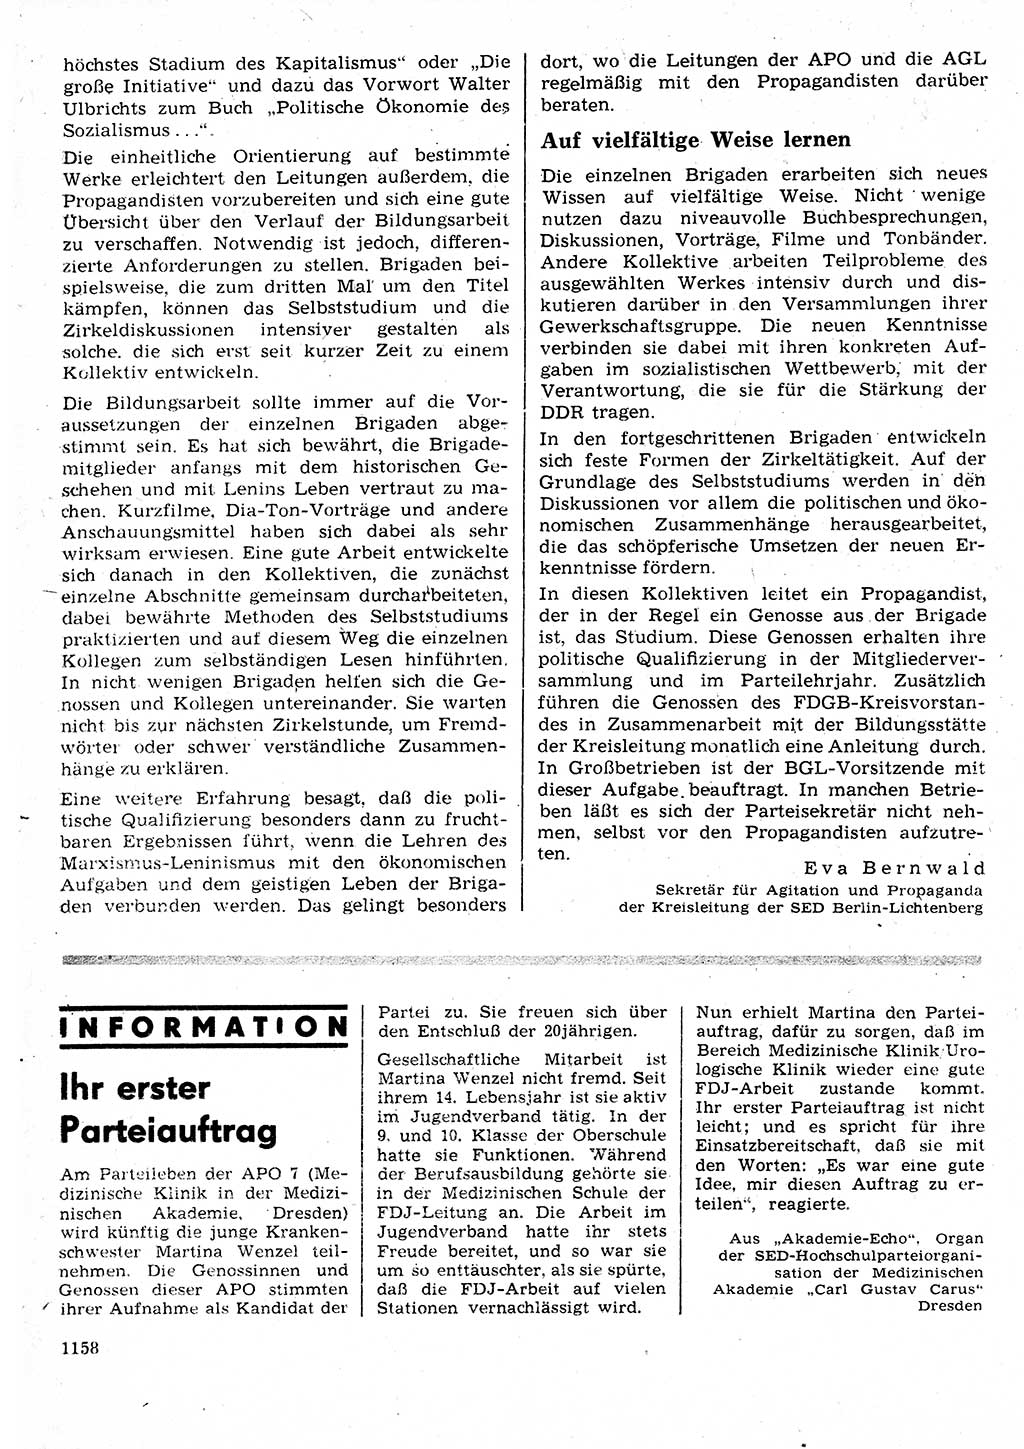 Neuer Weg (NW), Organ des Zentralkomitees (ZK) der SED (Sozialistische Einheitspartei Deutschlands) für Fragen des Parteilebens, 25. Jahrgang [Deutsche Demokratische Republik (DDR)] 1970, Seite 1158 (NW ZK SED DDR 1970, S. 1158)